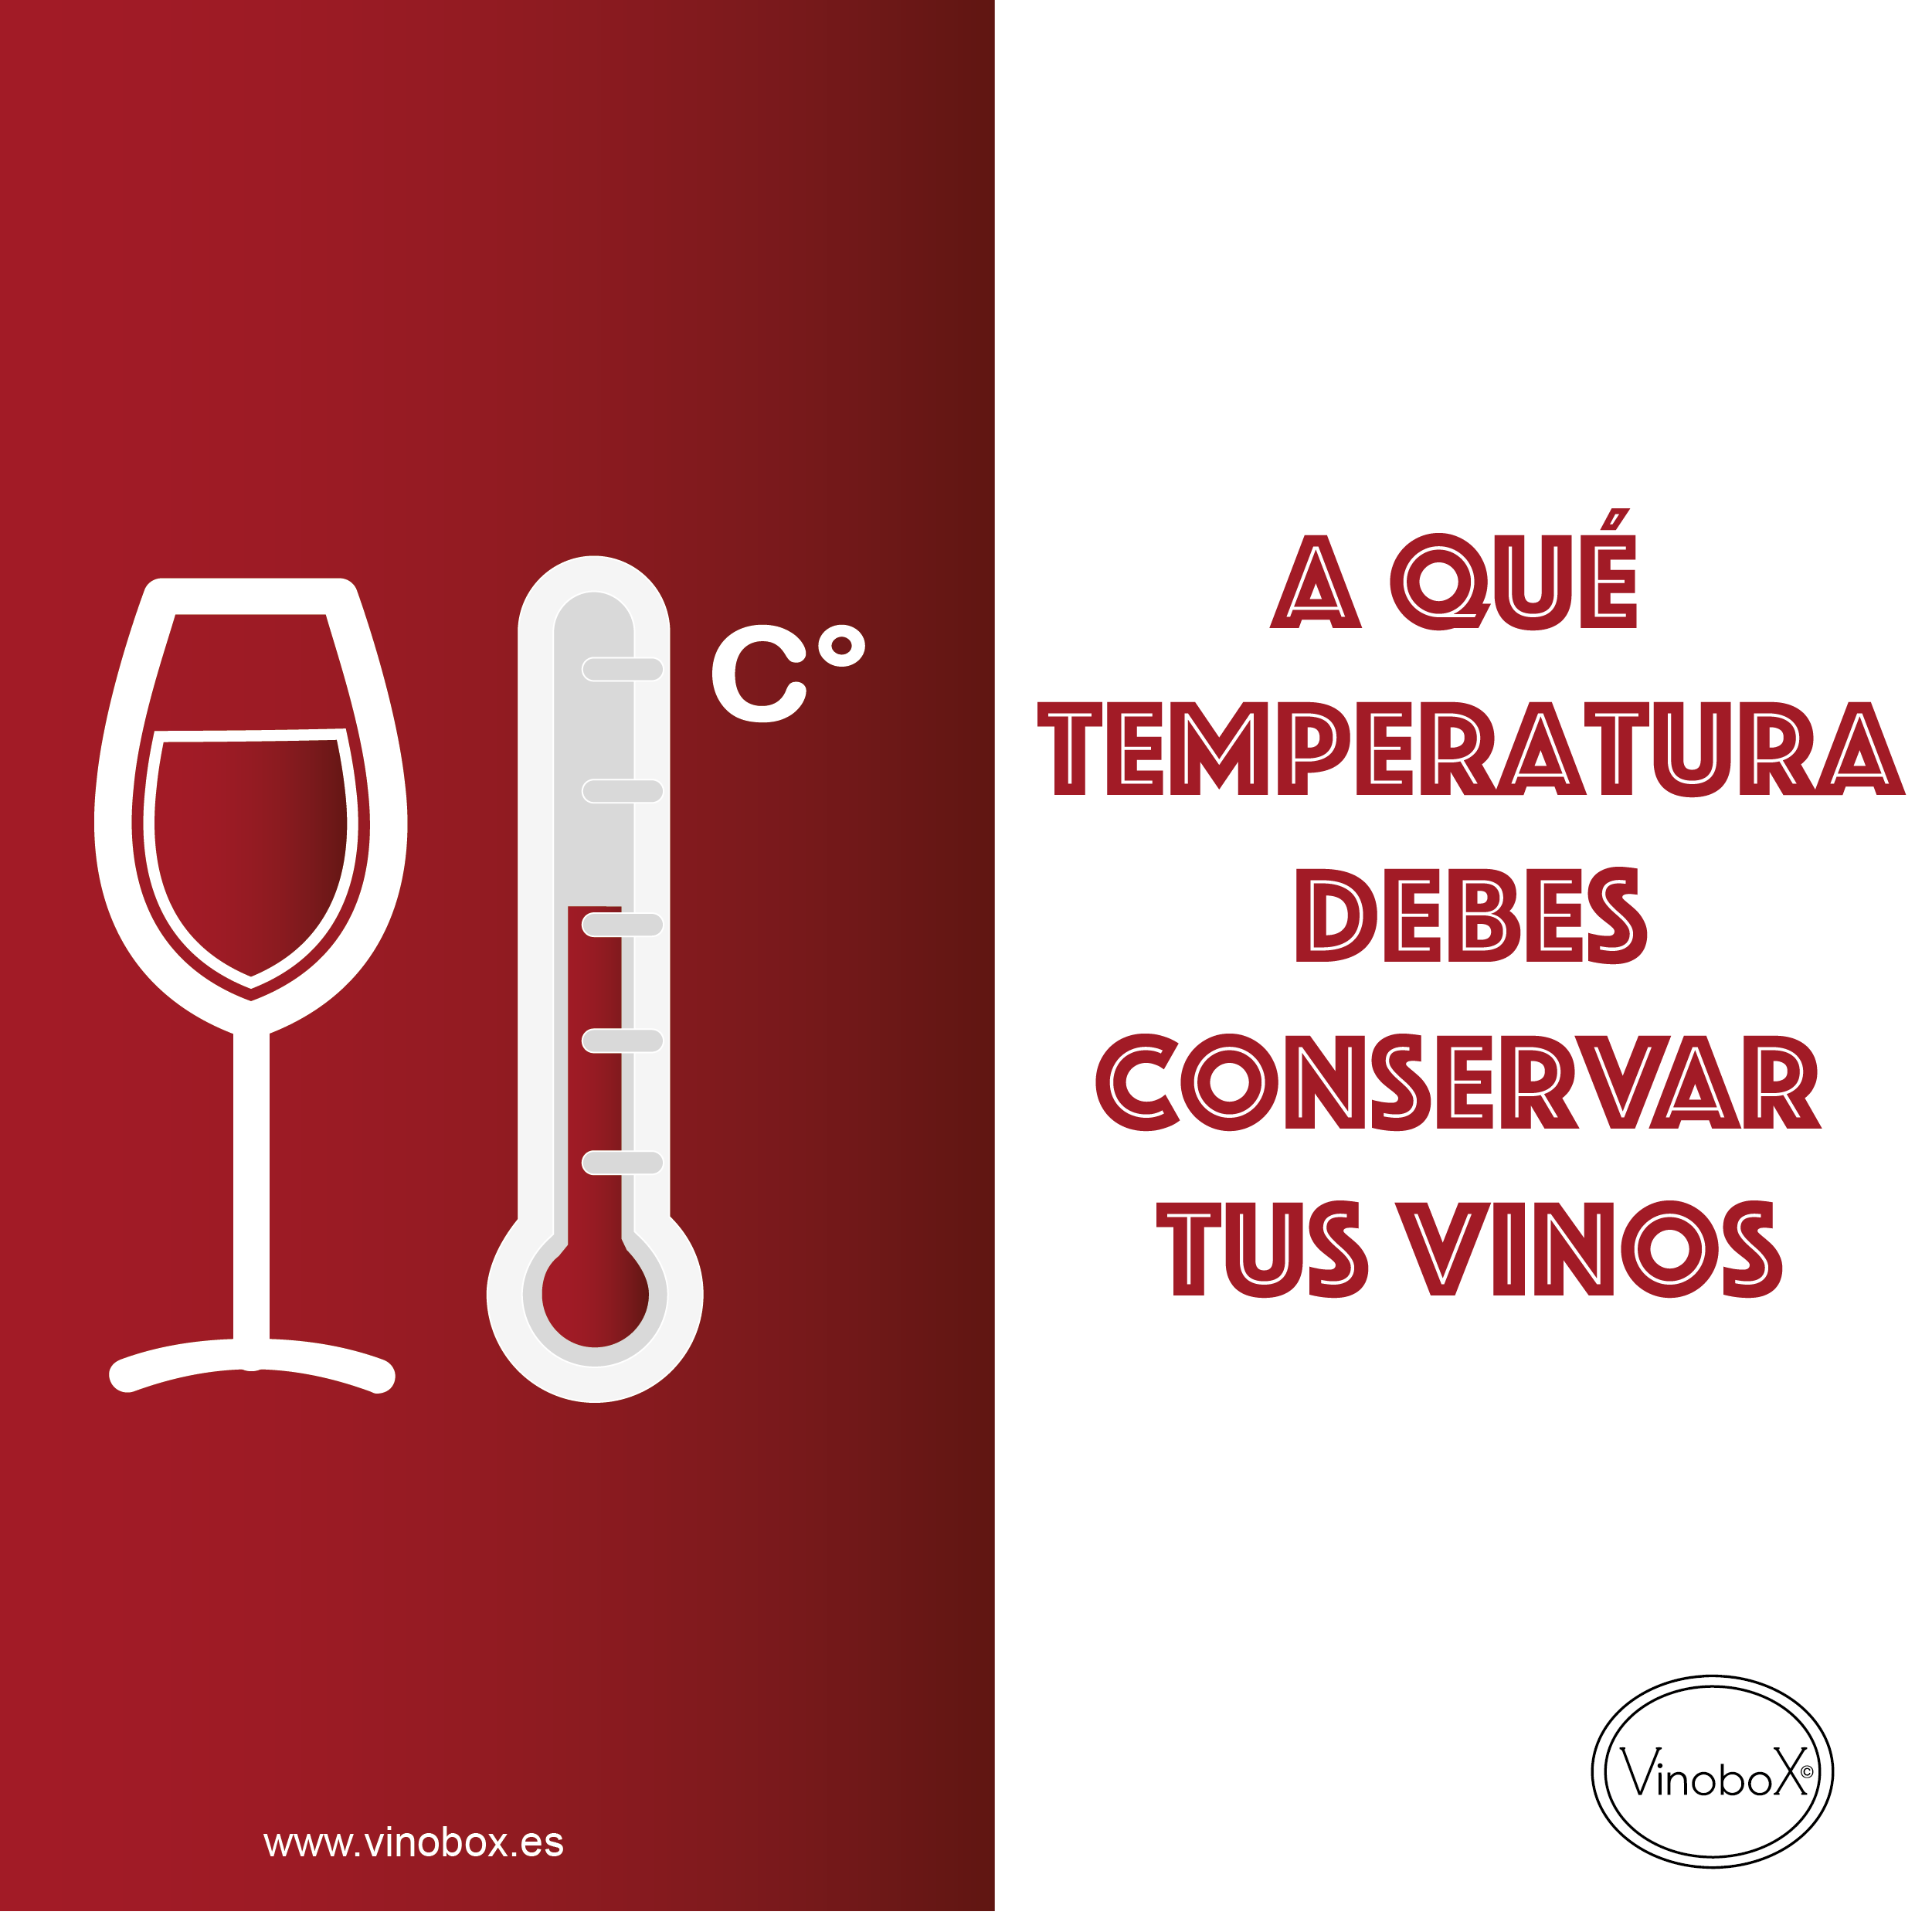 A qué temperatura debes conservar tus vinos